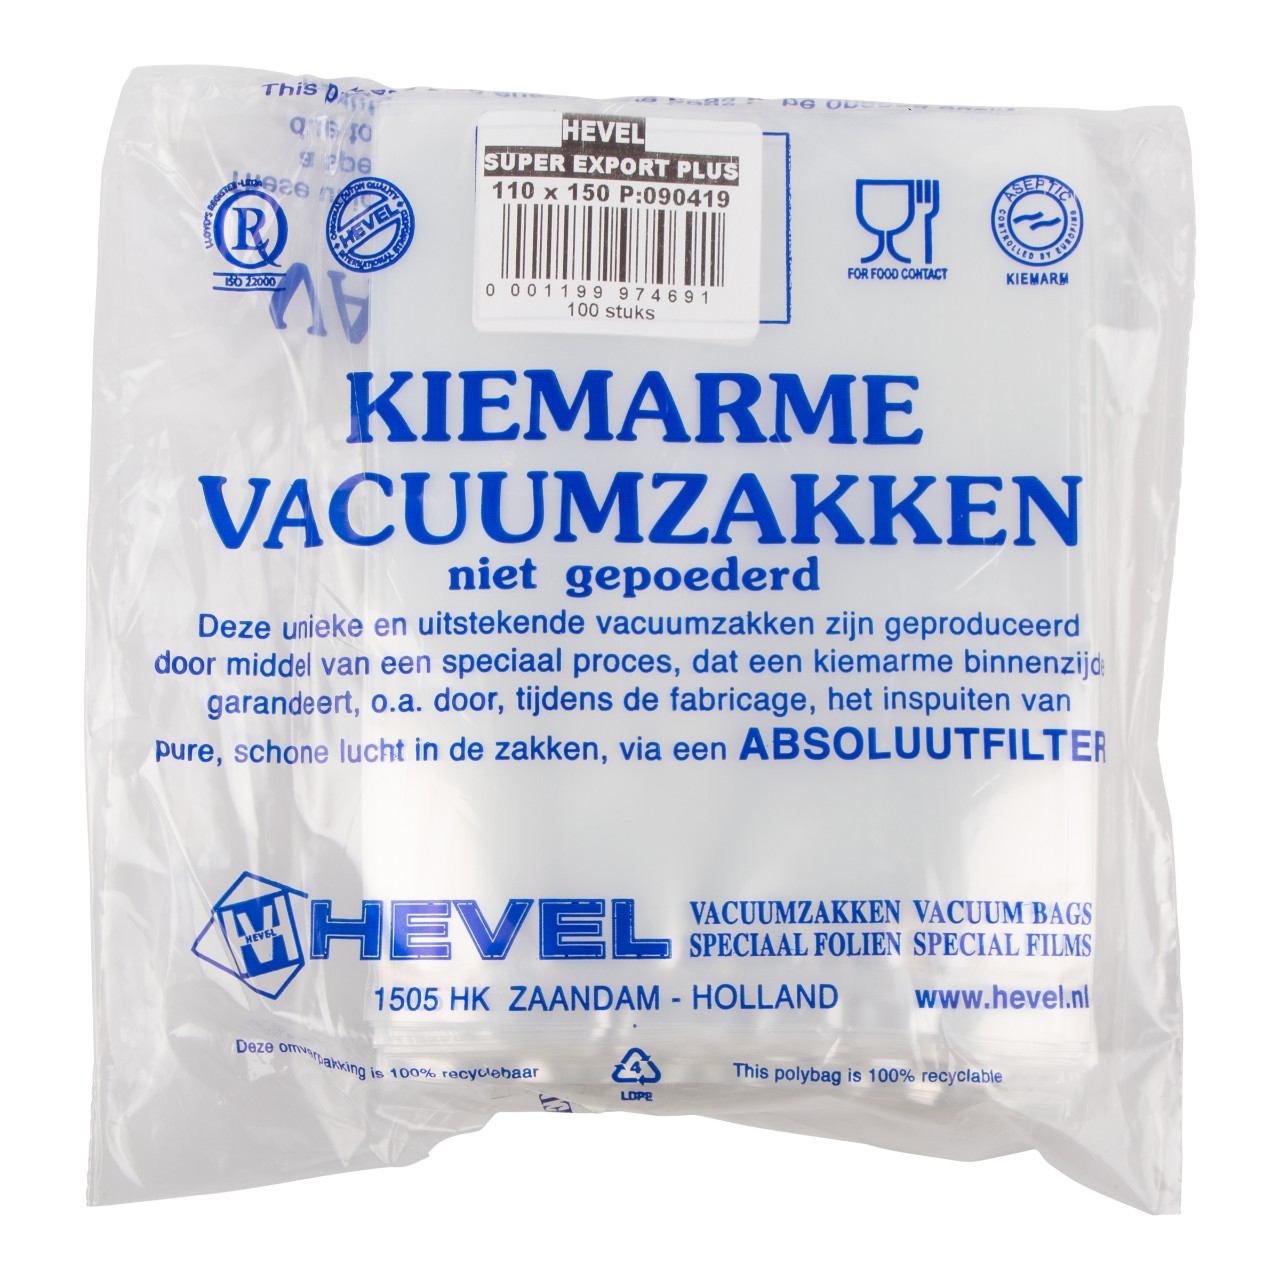 Vooruitzicht Necklet De Hevel Vacuümzakken niet gepoederd 110 x 150 mm Pak 100 stuks | Sligro.nl